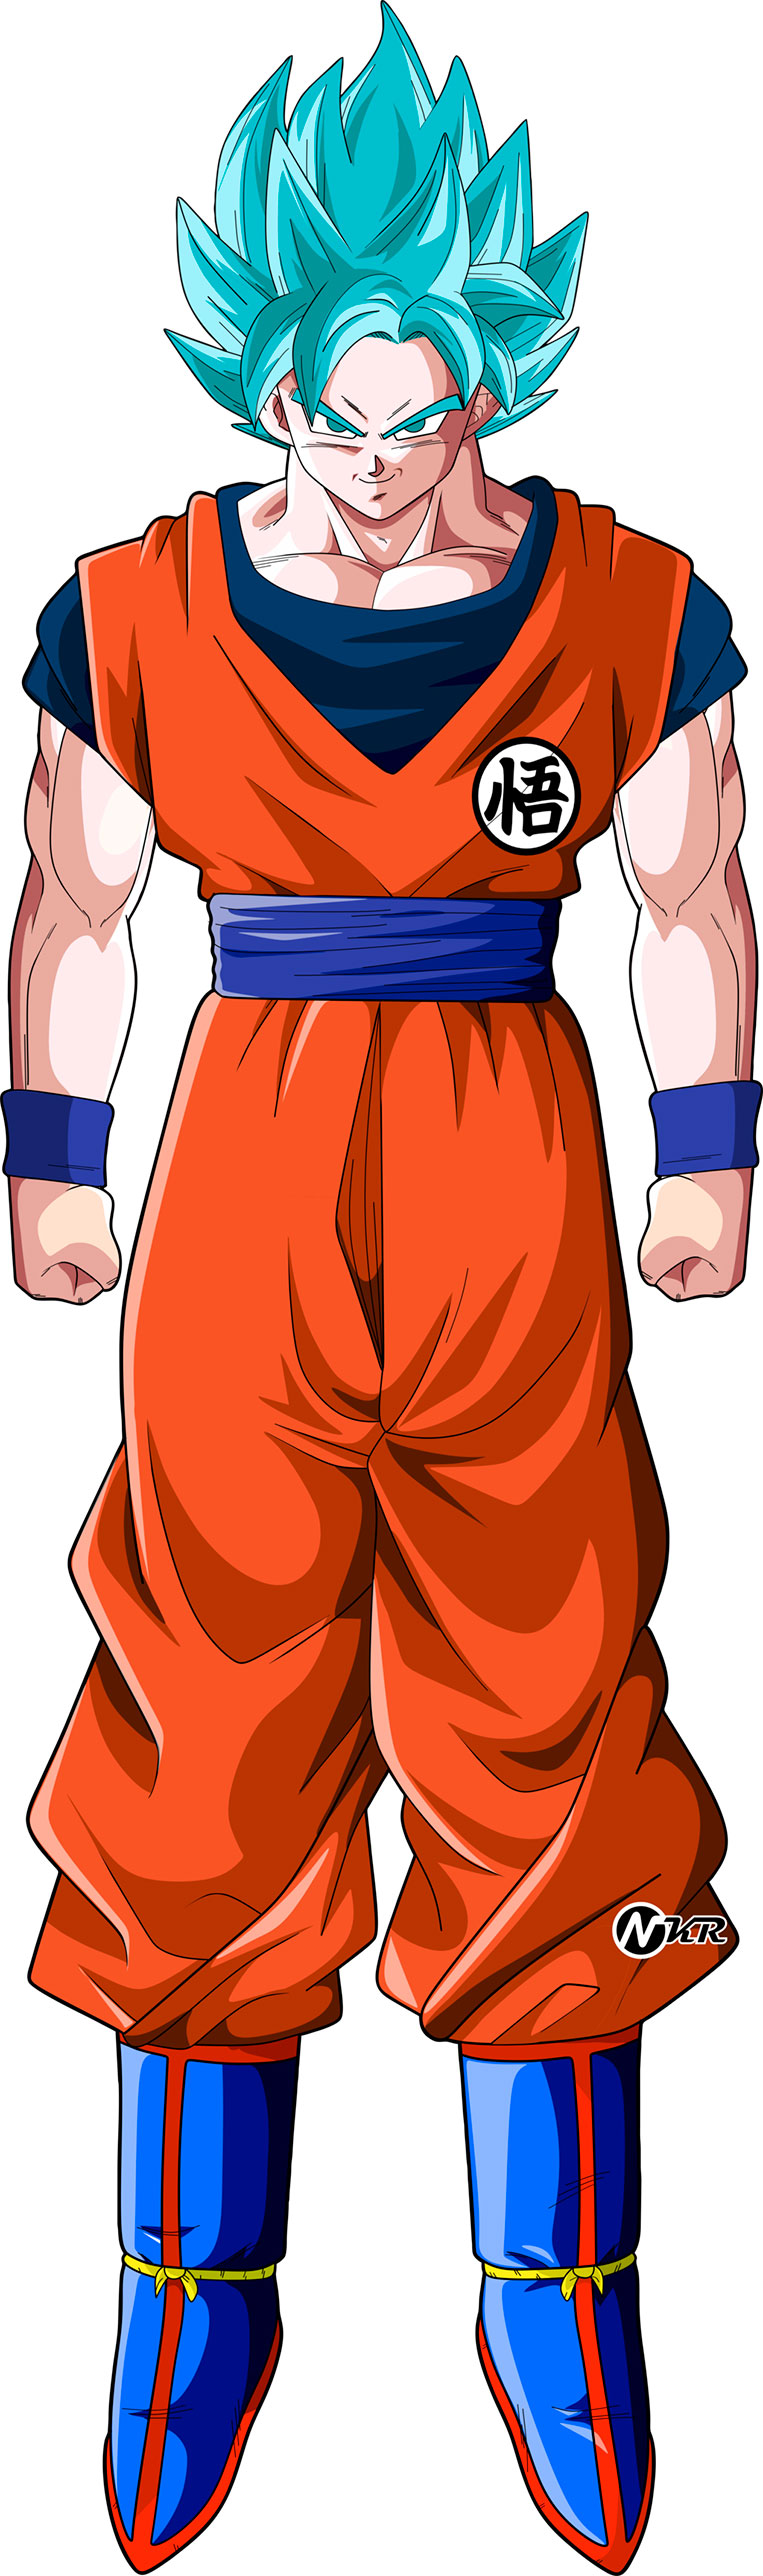 Goku super saiyajin blue